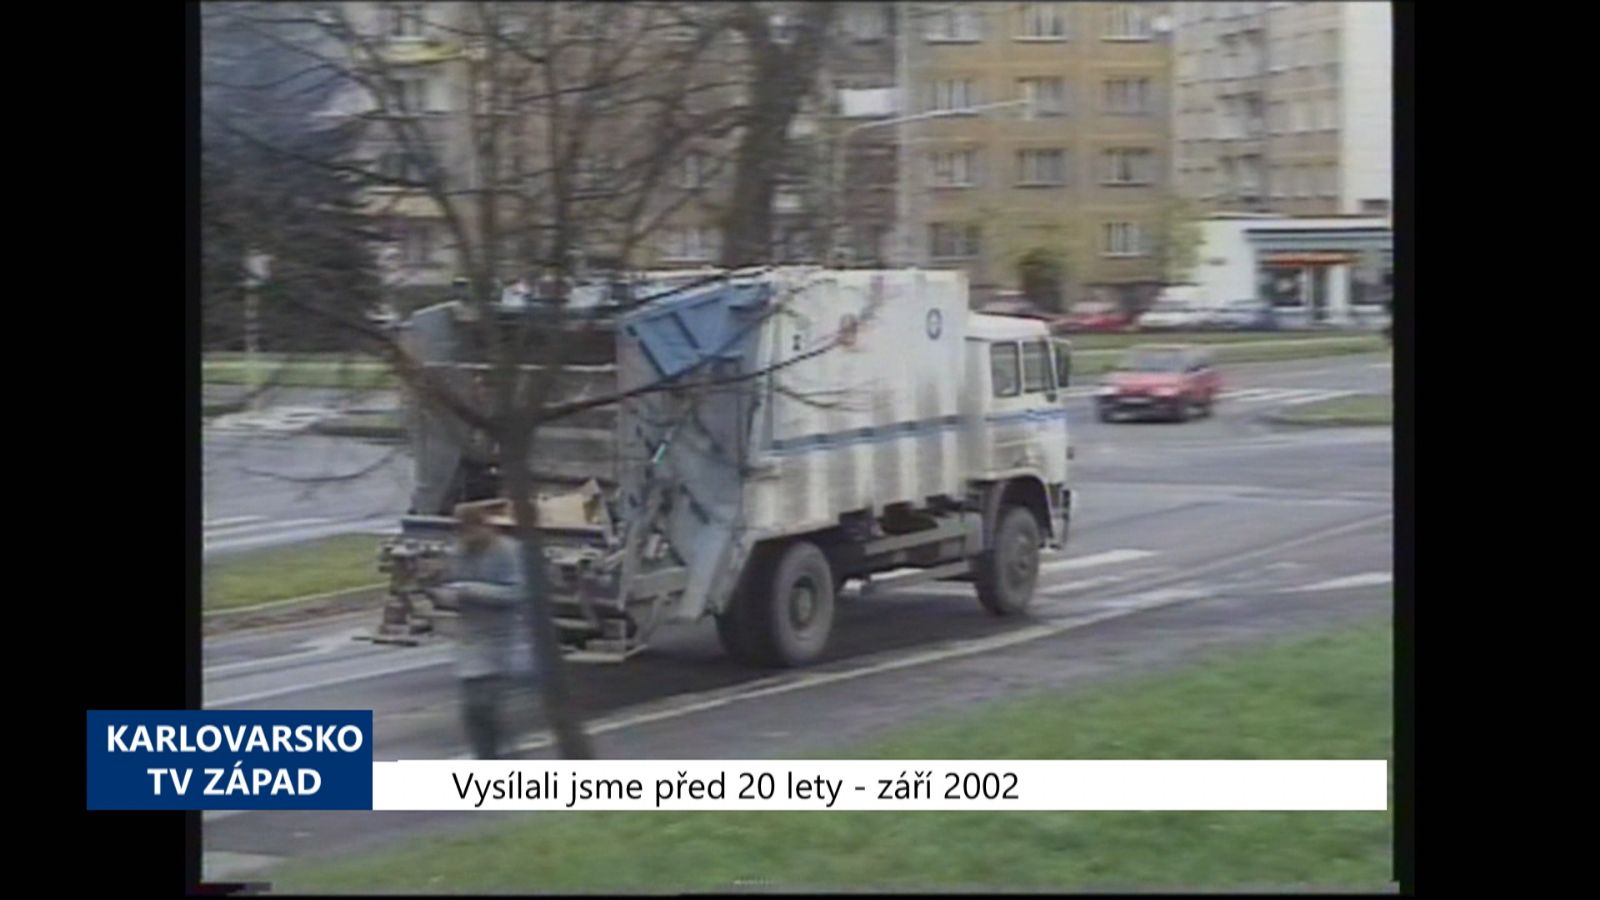 2002 – Sokolov: Systém plateb za svoz odpadu se nebude měnit (TV Západ)